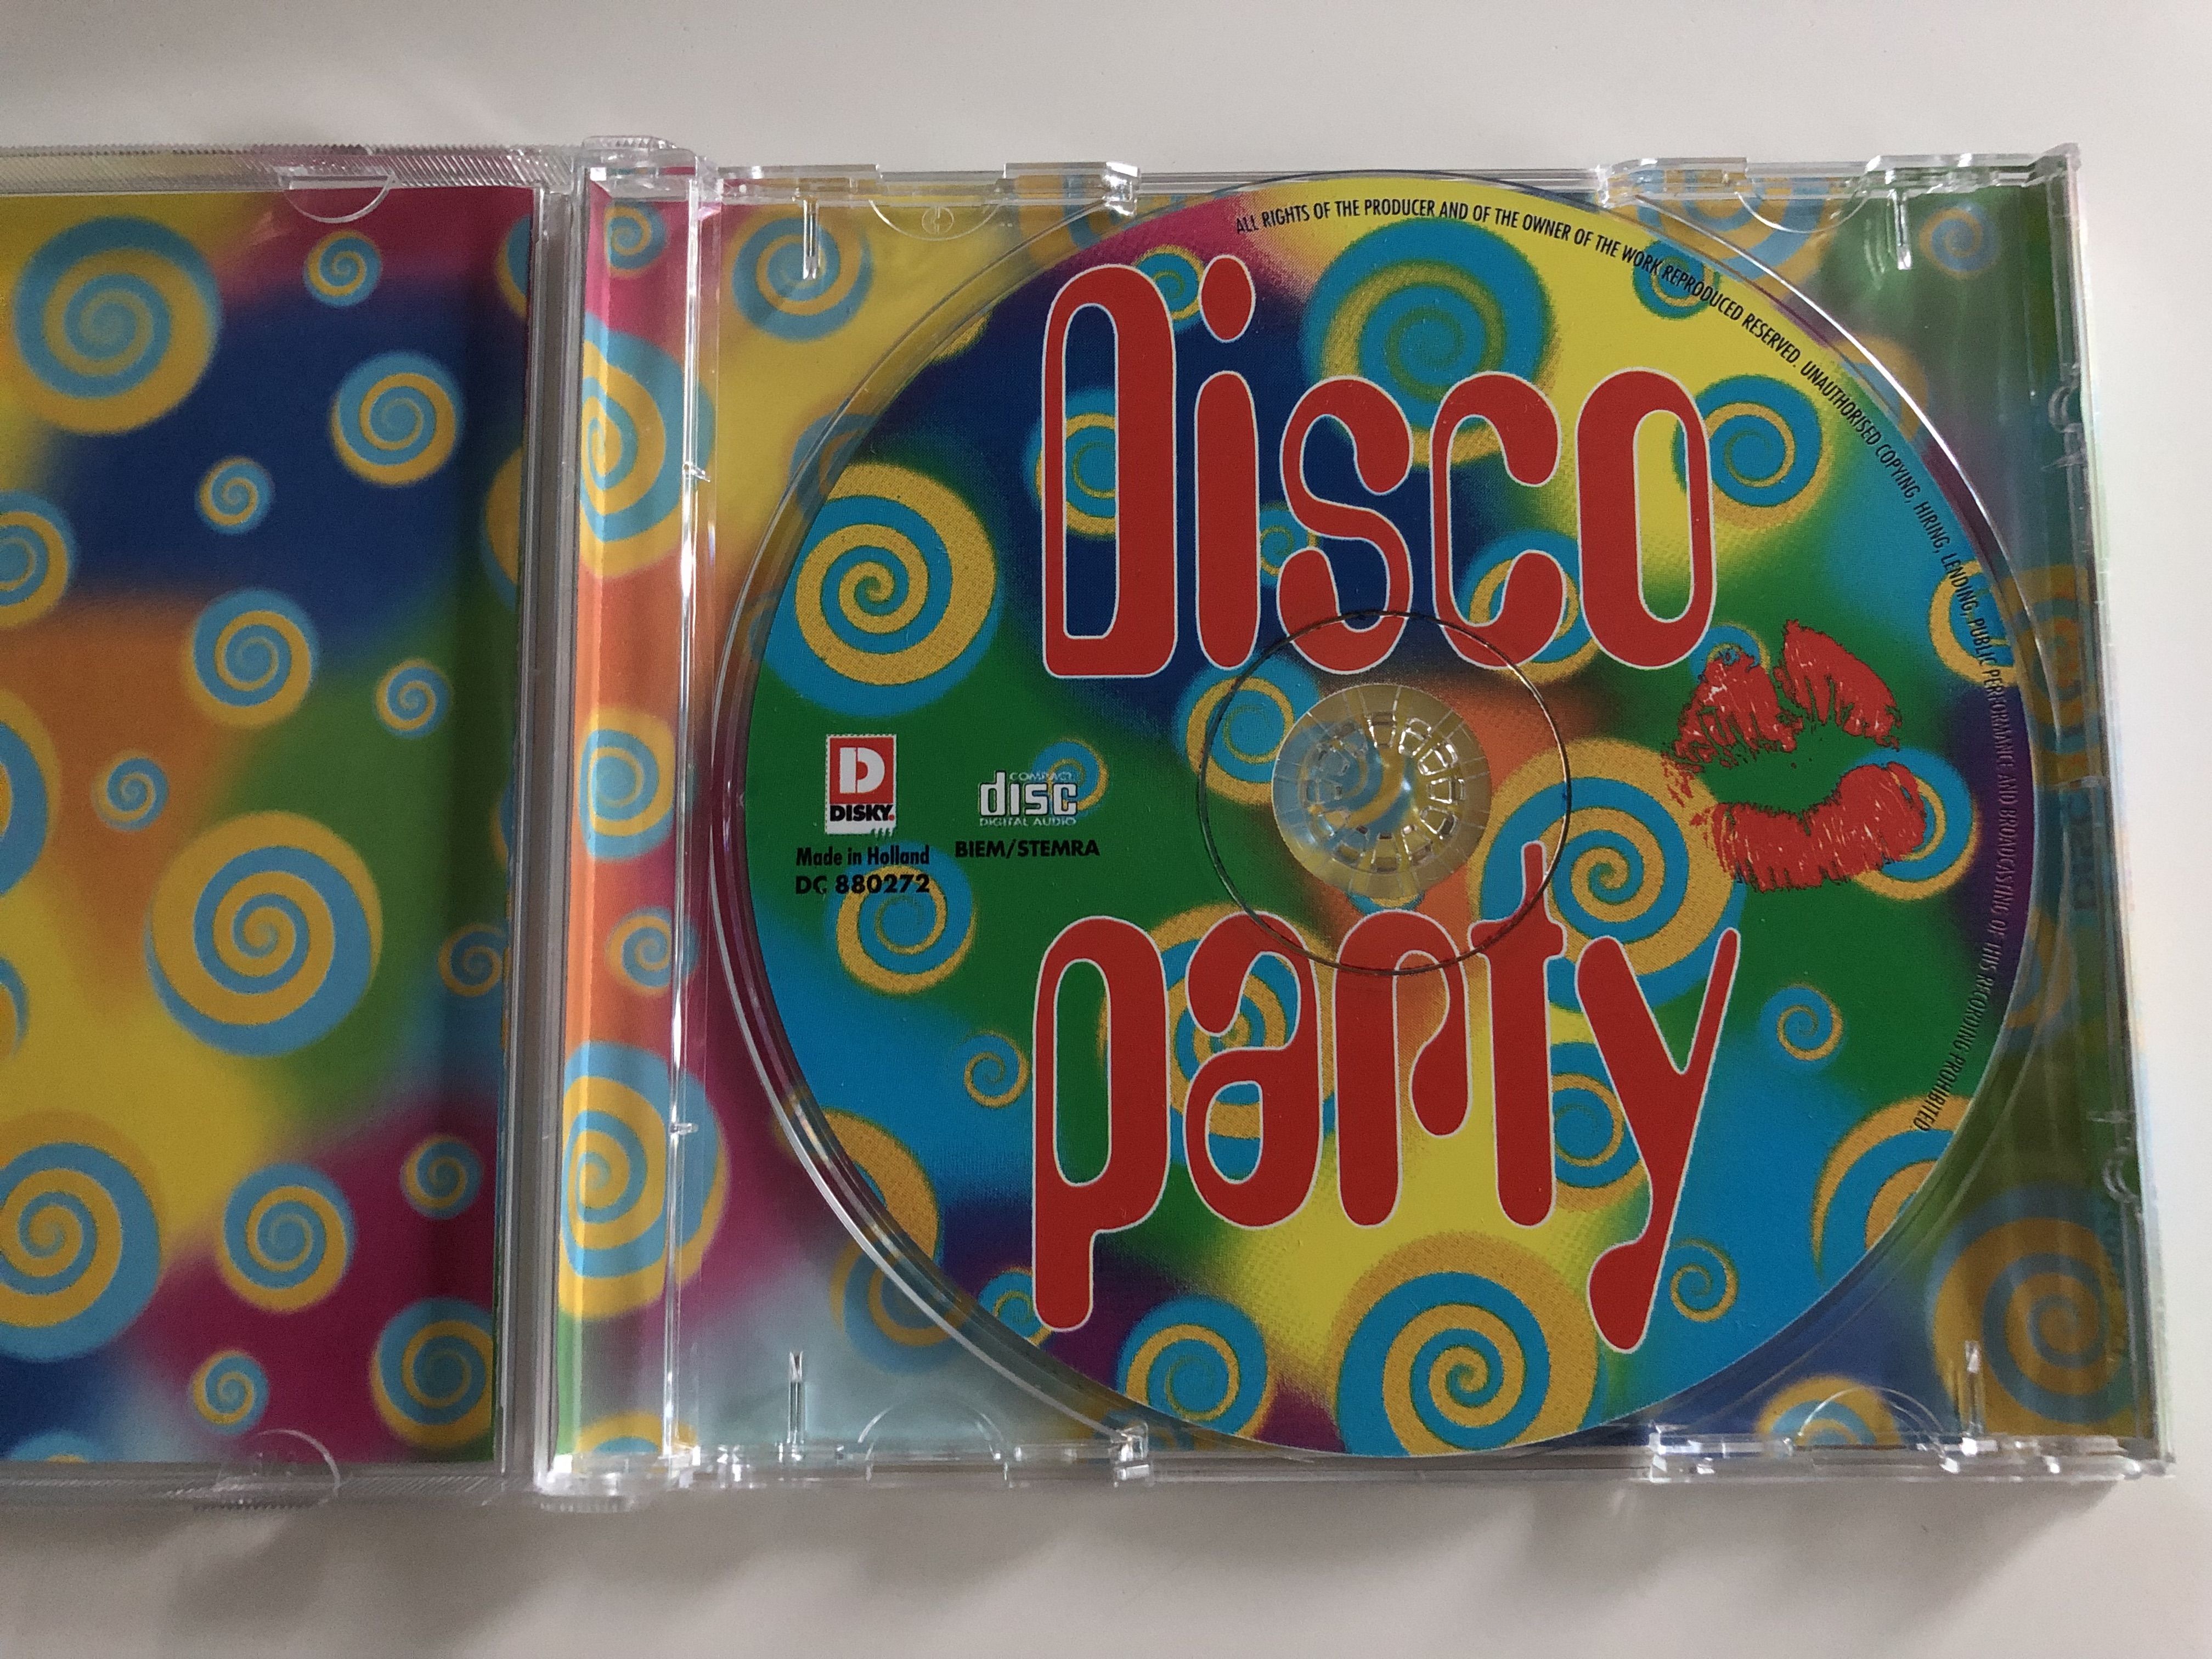 disco-party-anita-ward-tavares-kc-the-sunshine-band-karen-young-audio-cd-1997-disky-dc-880272-3-.jpg